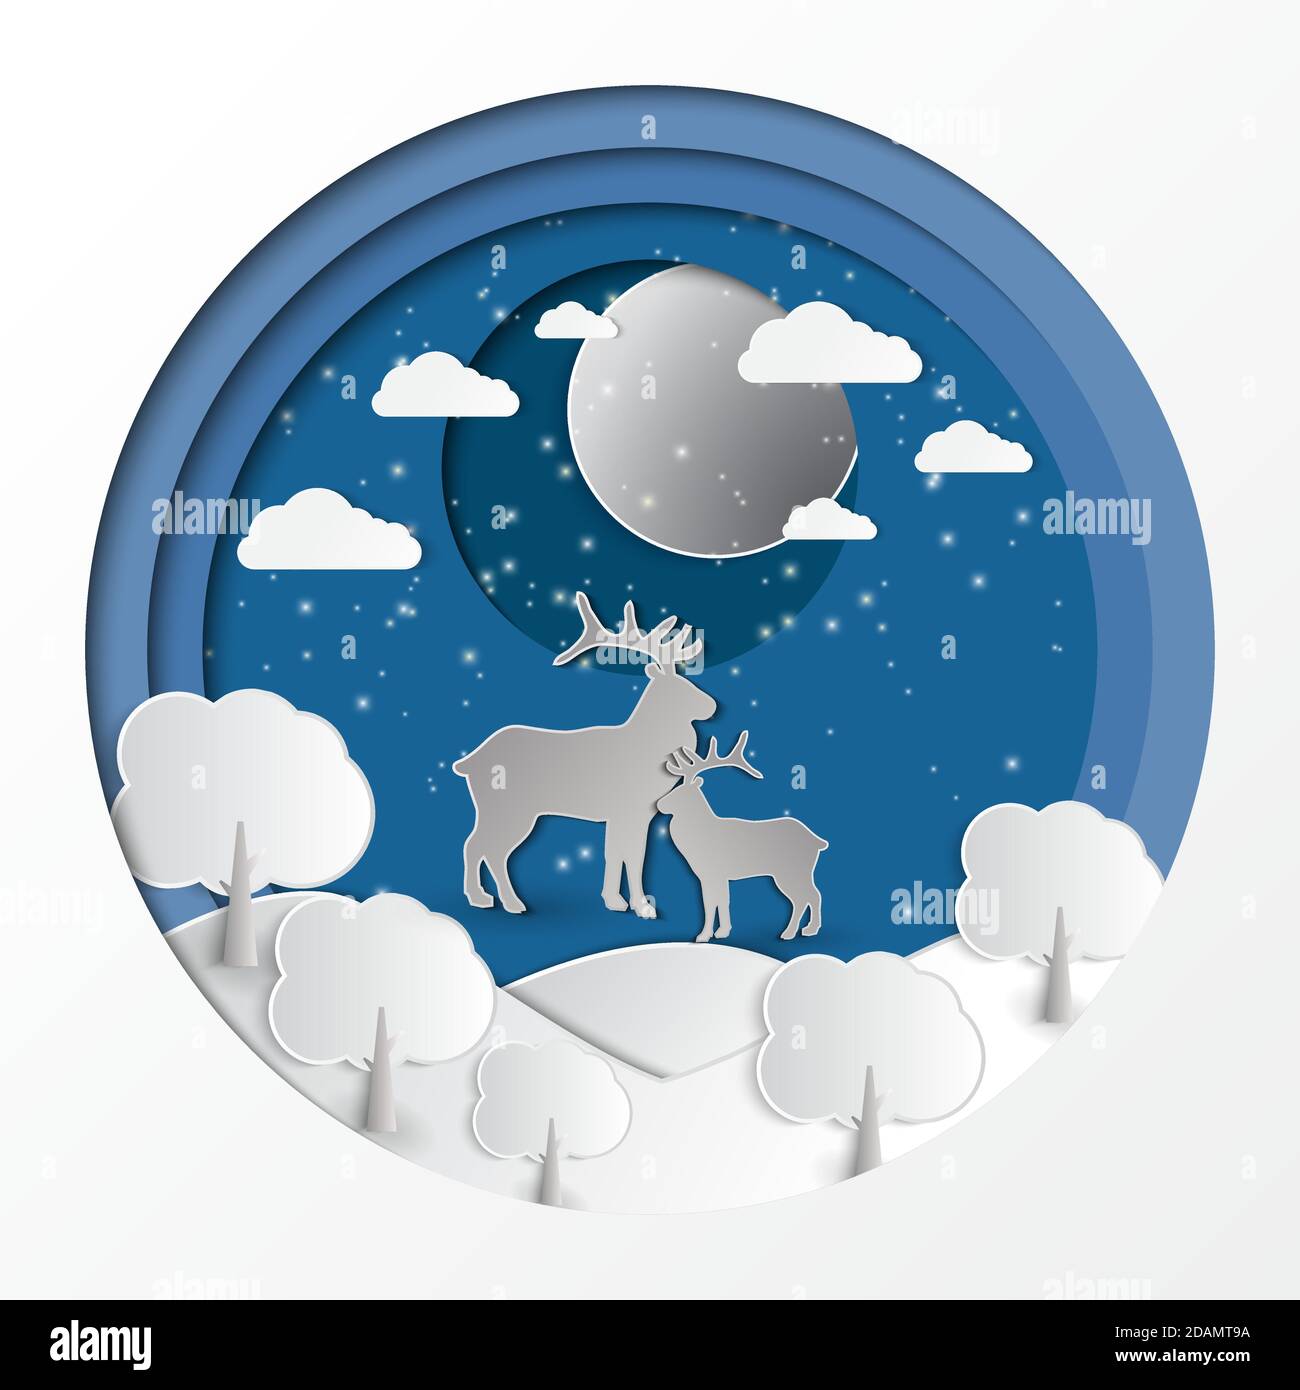 Hirsch im Wald mit Schnee in der dunklen Nacht.White Silhouette Papier Kunstdesign auf blauem Himmel Hintergrund.Vektor-Illustration.EPS10 Stock Vektor